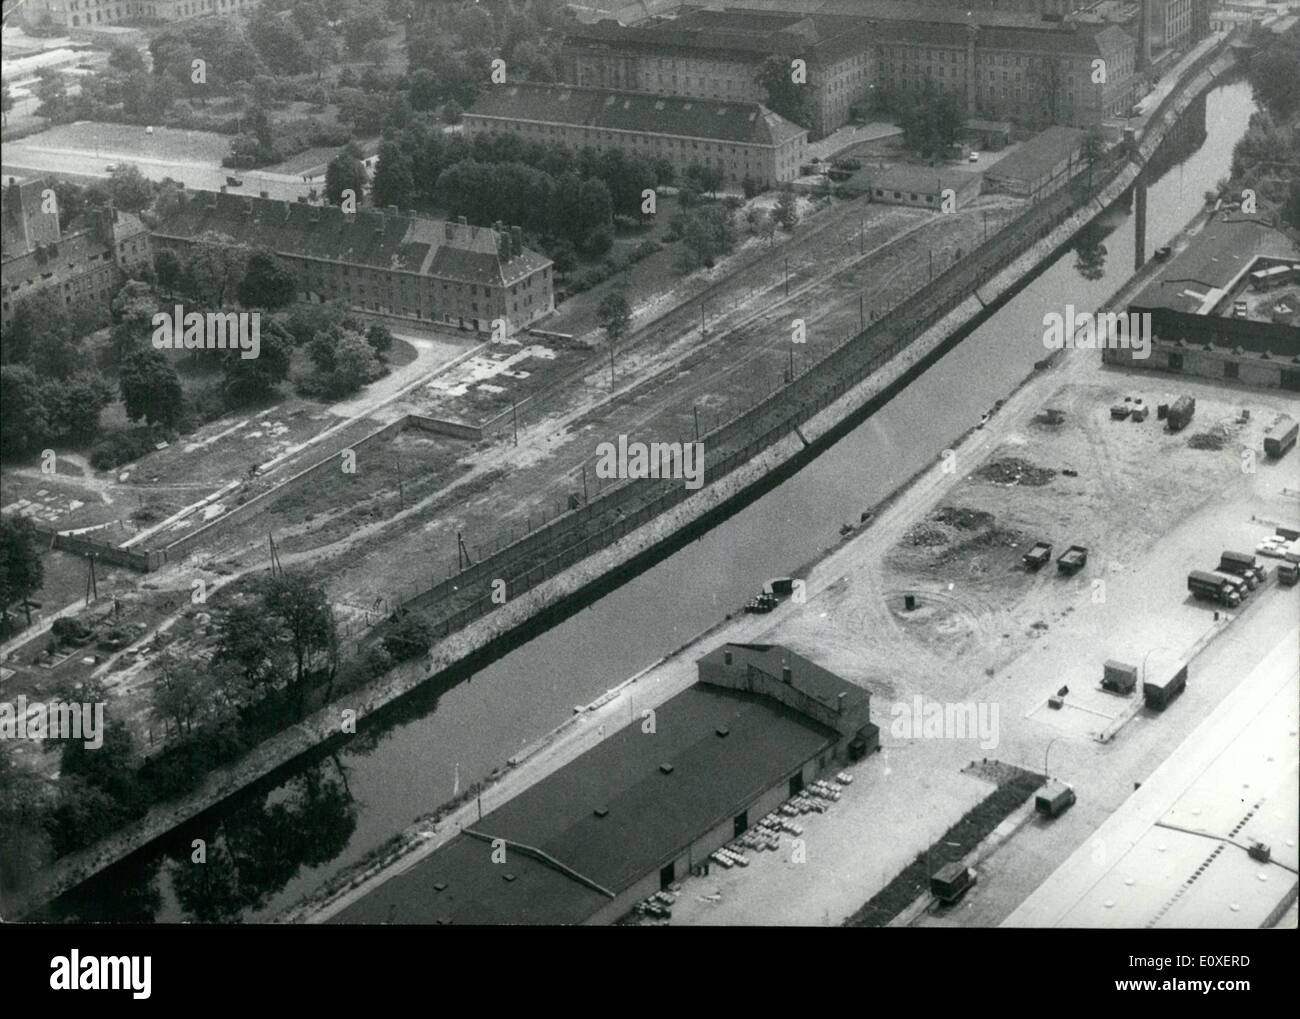 Lug. 07, 1966 - come una linea: passa la parete lungo il canale Landwehr attraverso Berlino. Su tutti questi punti nel tempo avranno il nuovo e moderno muro. La foto mostra è stata presa con licenza di noi Air-Force. Foto Stock